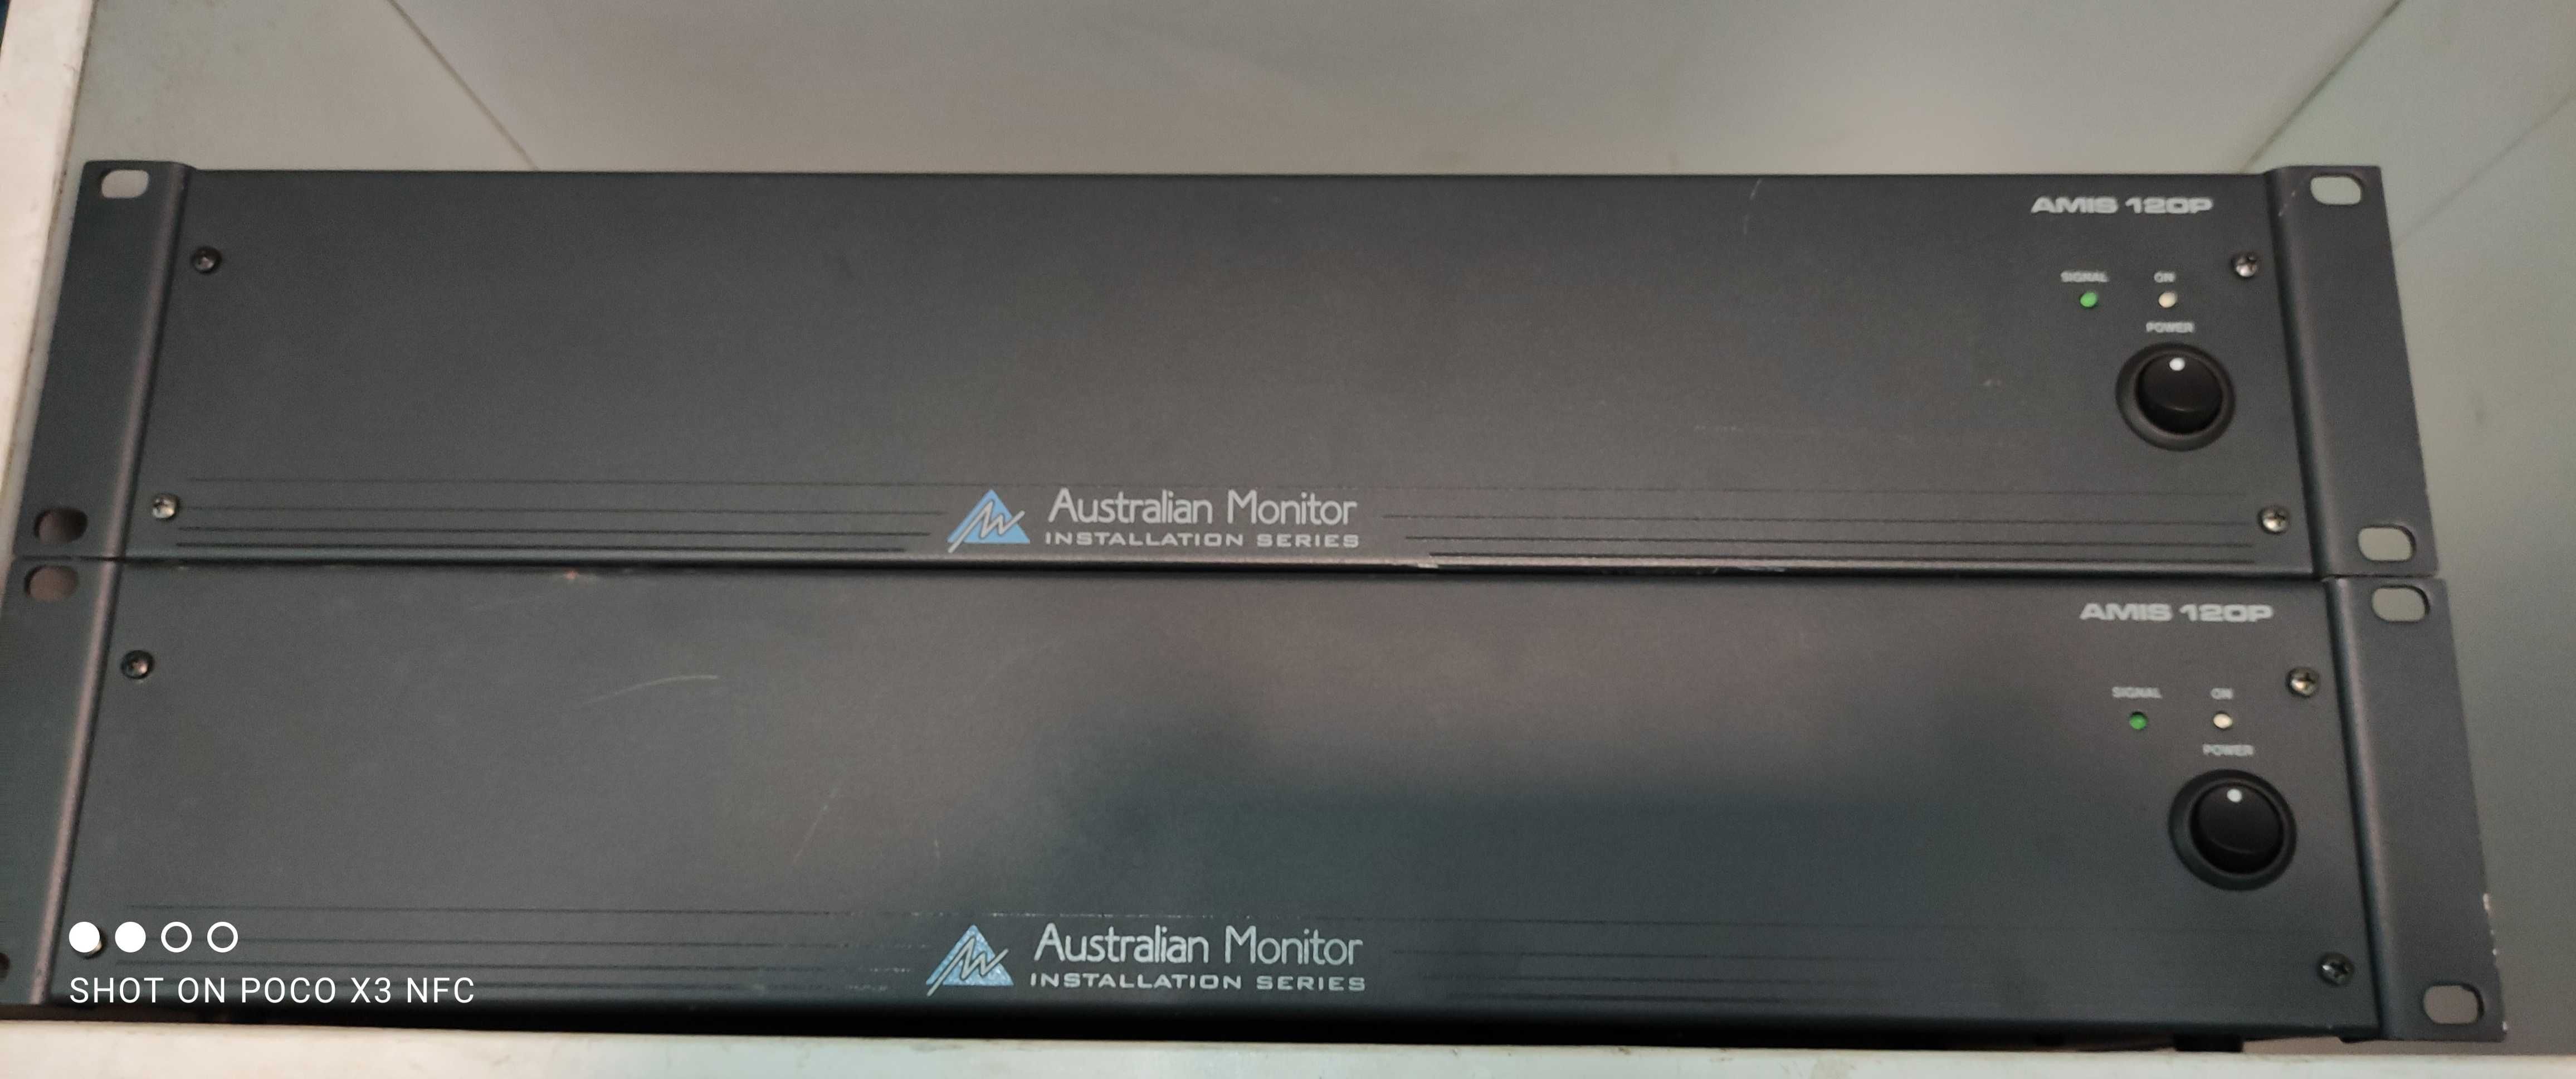 Підсилювачі AMIS120P: Australian Monitor;